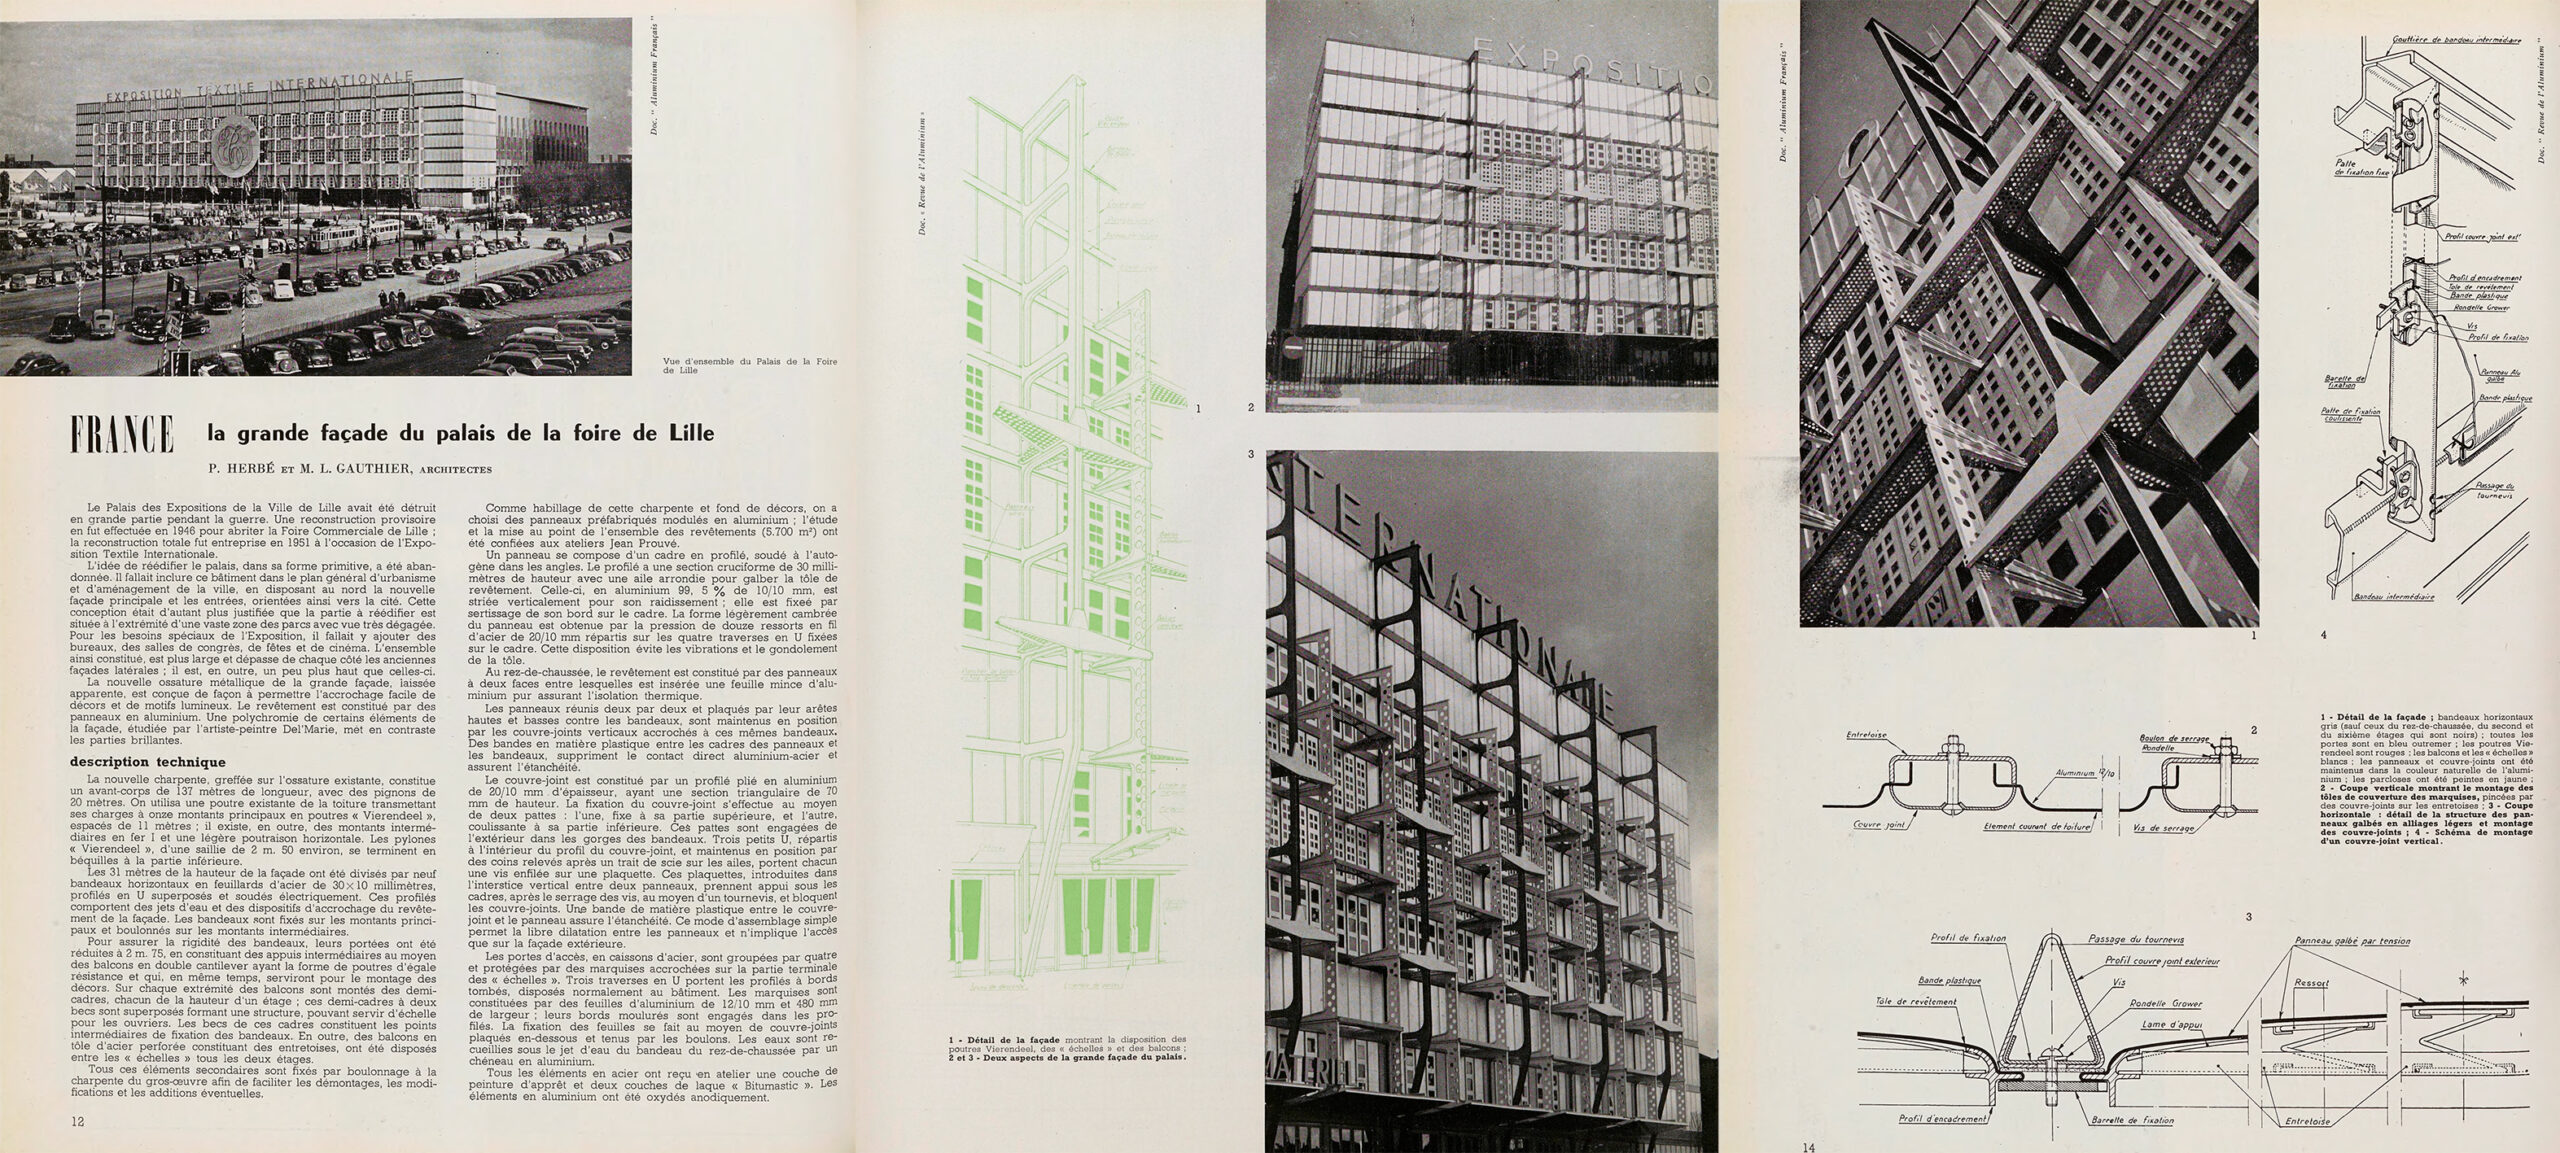 Façades du palais de la Foire, Lille, 1950-1951 (P. Herbé, M. L. Gauthier, arch.) paru dans <i>Techniques & Architecture</i>, n° 11-12, 1951.